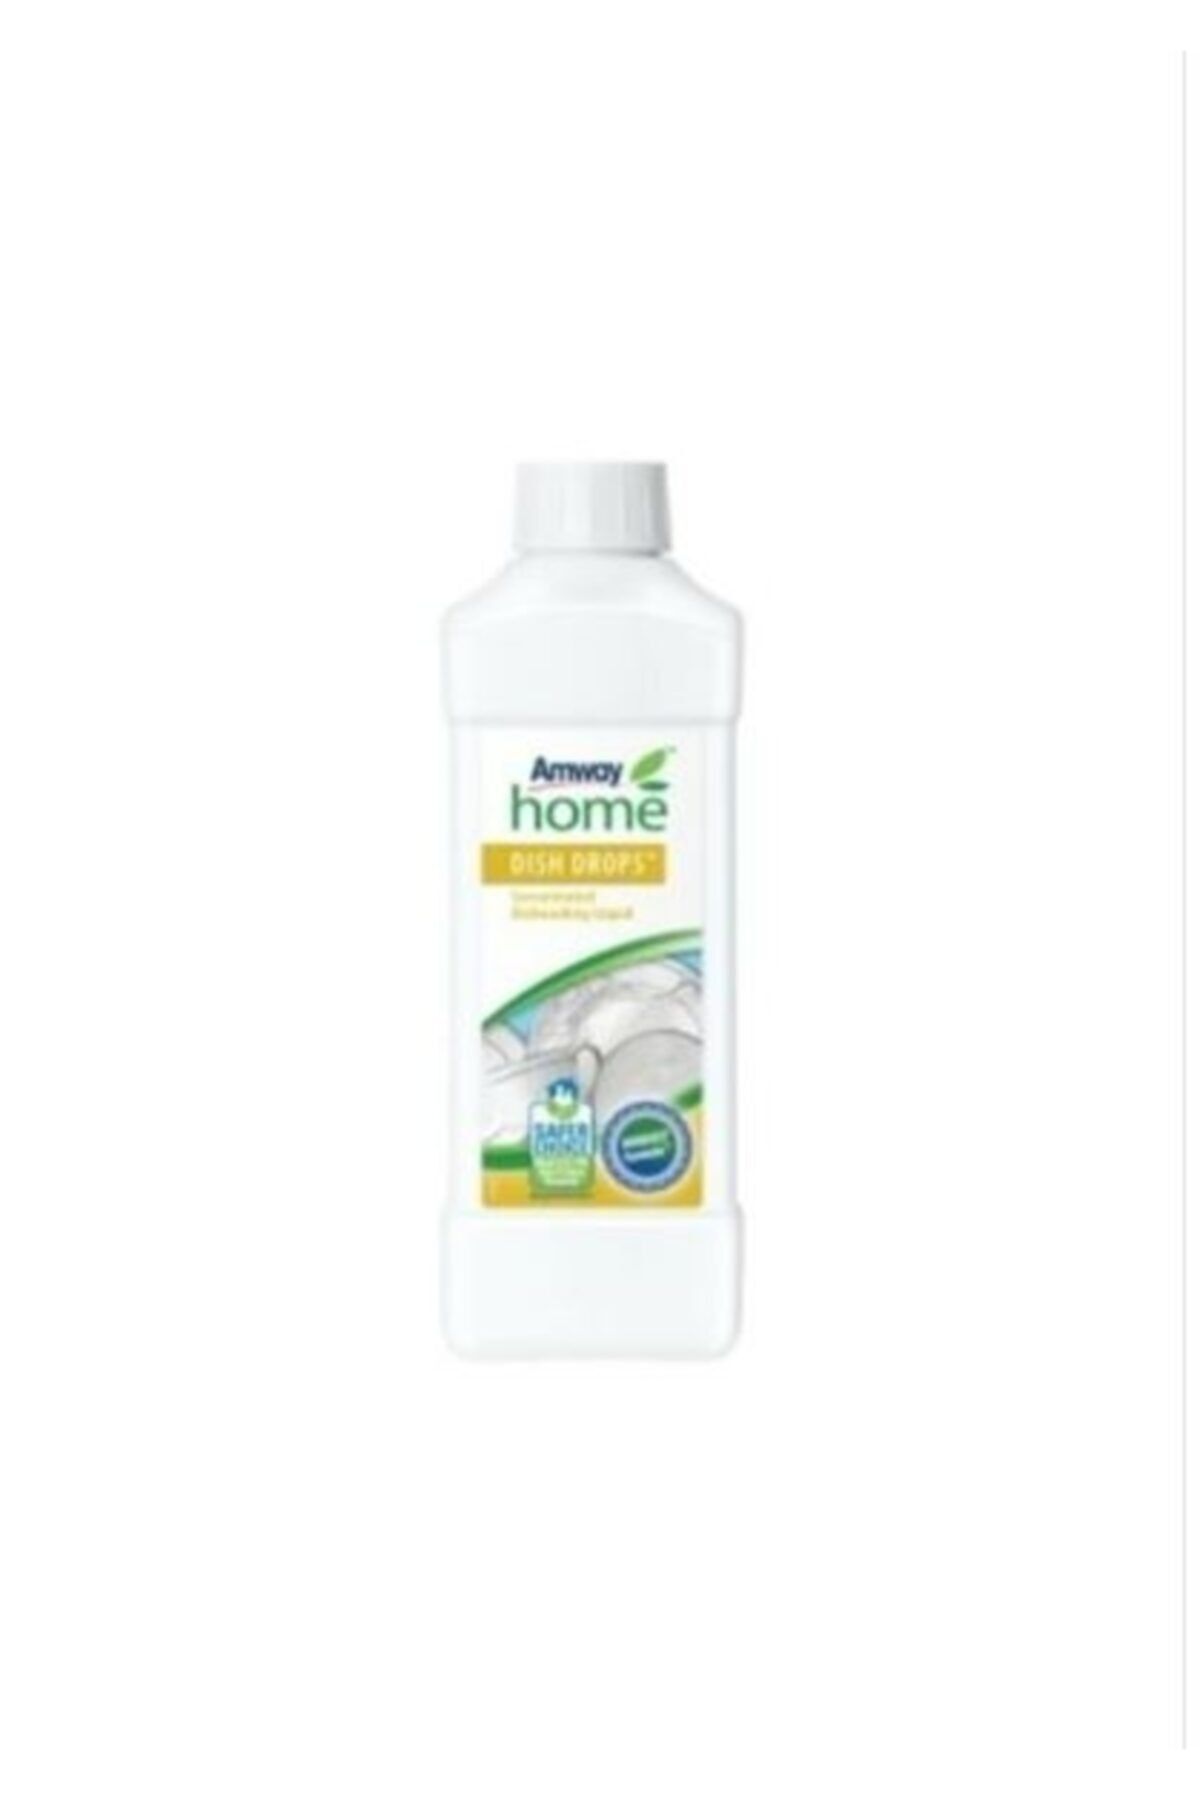 Amway Konsantre Sıvı Bulaşık Deterjanı Home™ Dısh Drops™